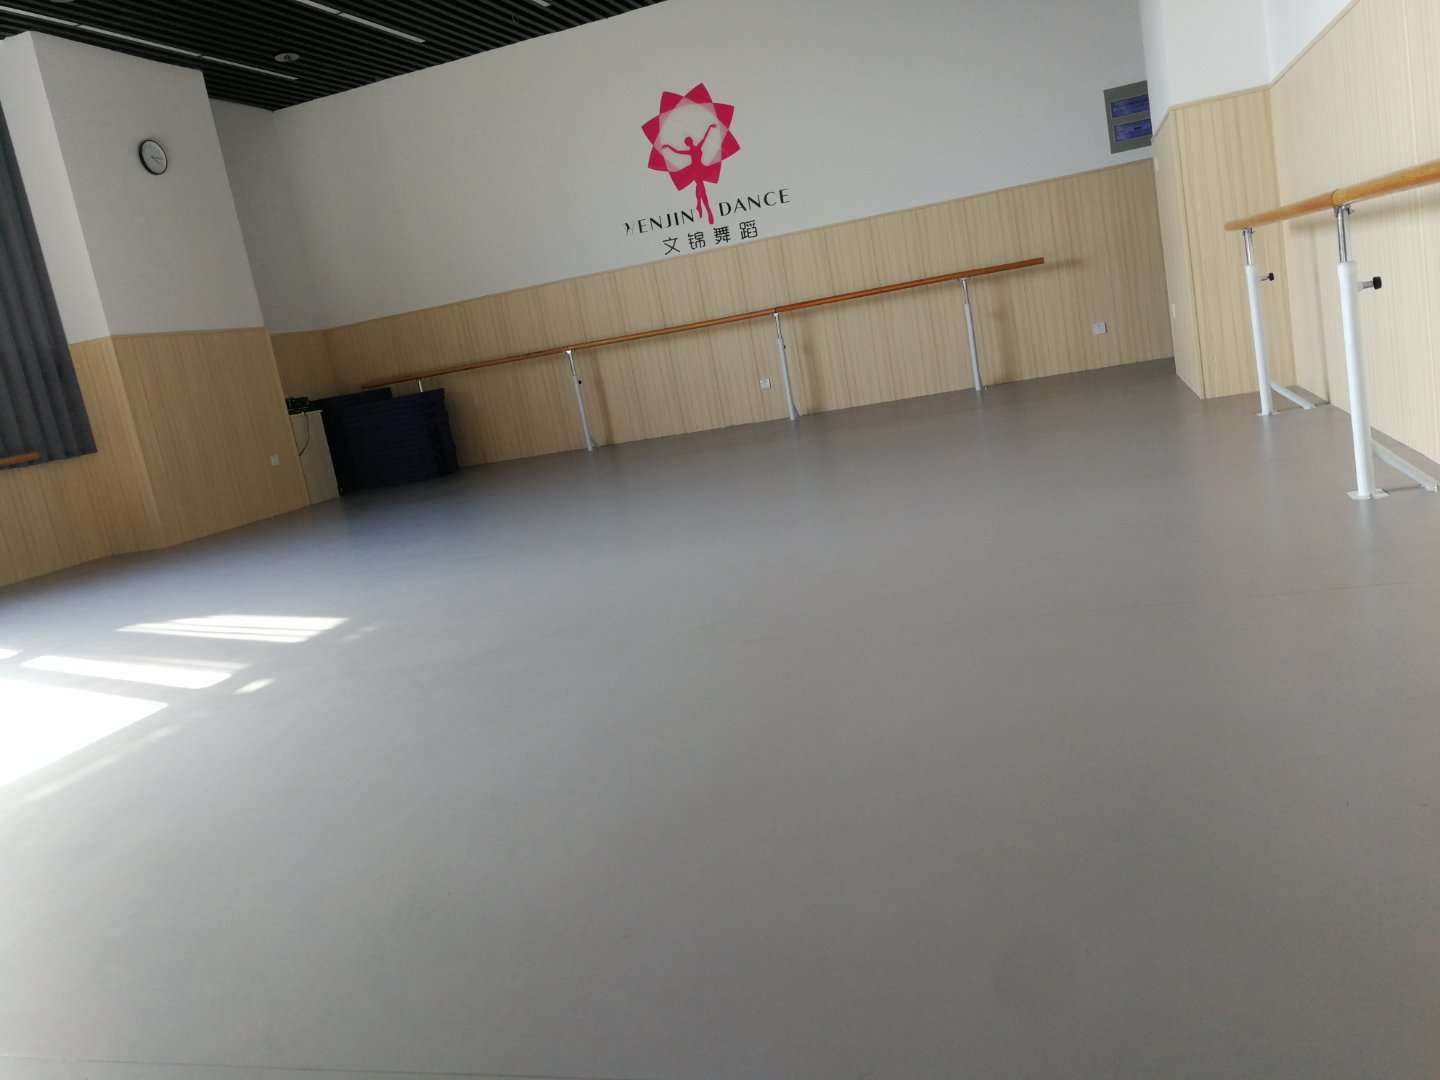 邵阳舞蹈地板 无痕弹性运动地胶 纯色地板图片